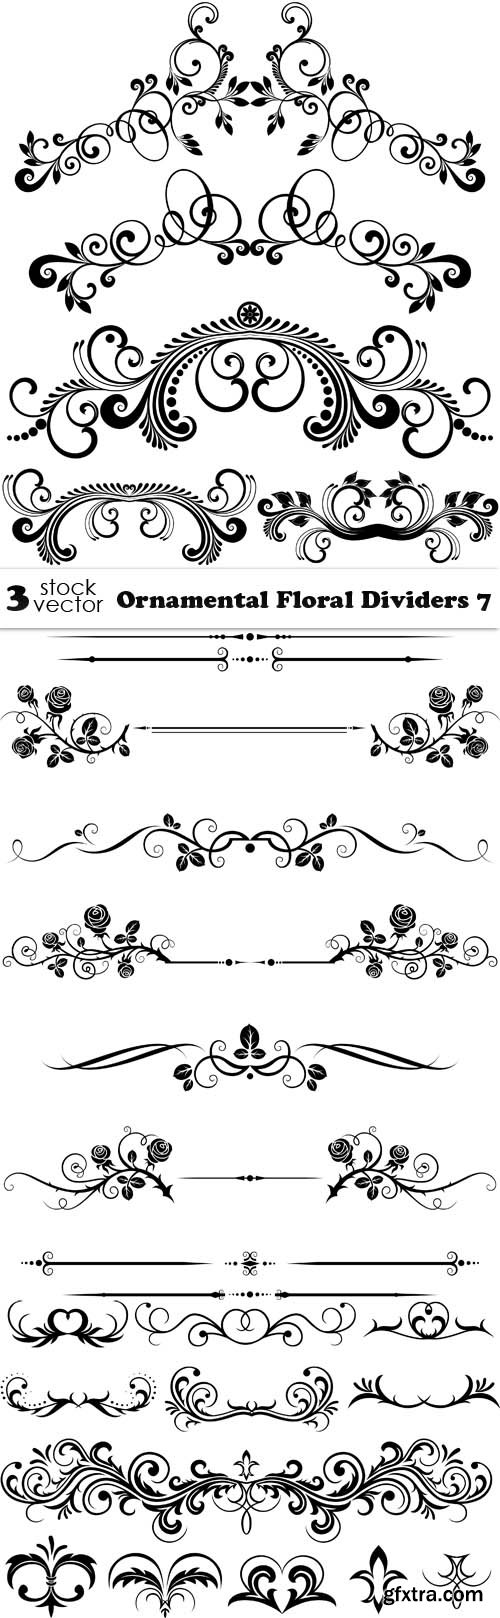 Vectors - Ornamental Floral Dividers 7